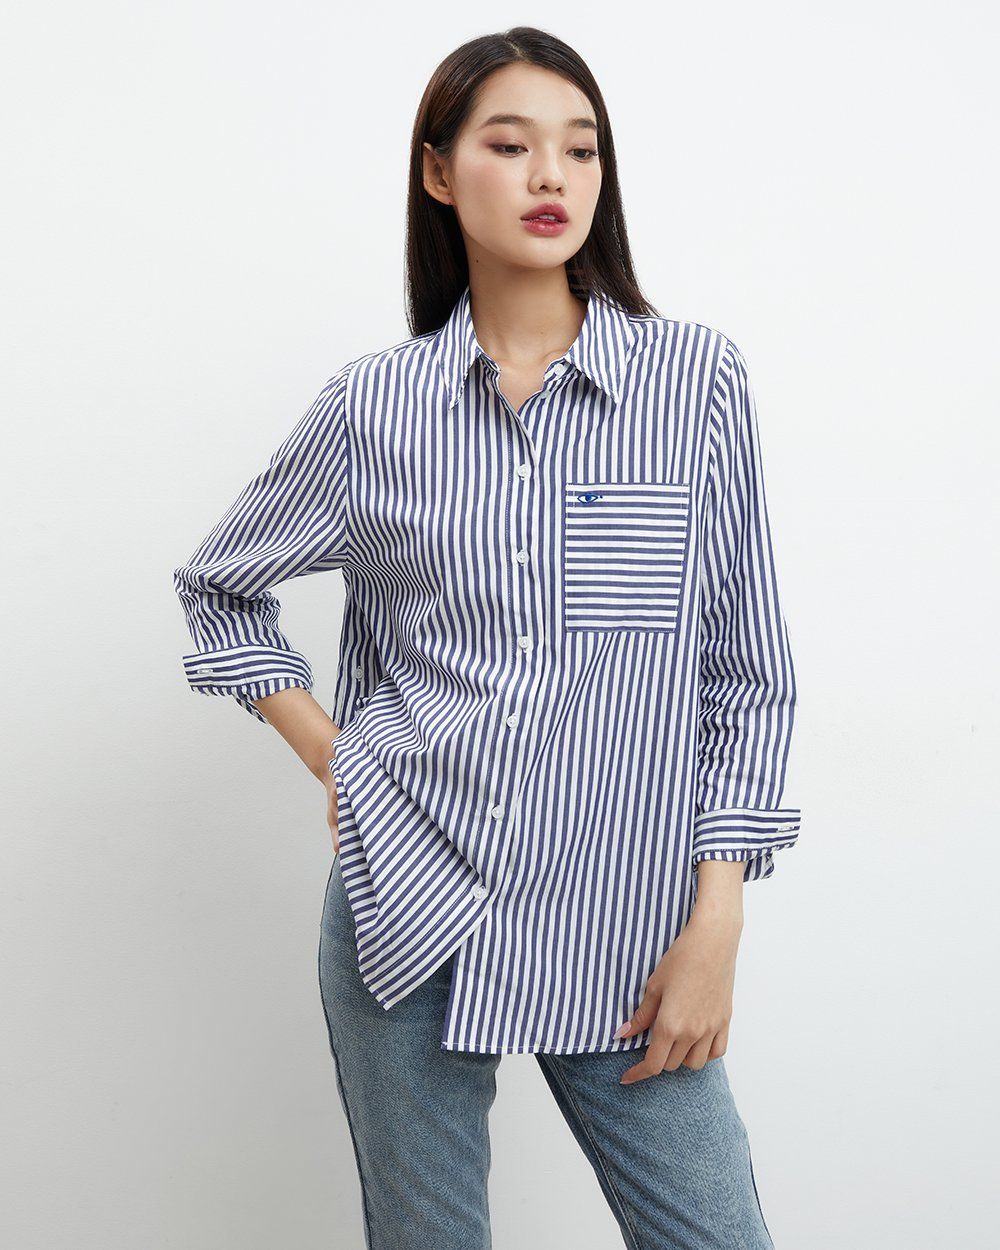  Áo Sơ Mi Nữ TheBlueTshirt Oversized Pocket Shirt - Blue Navy Stripe 